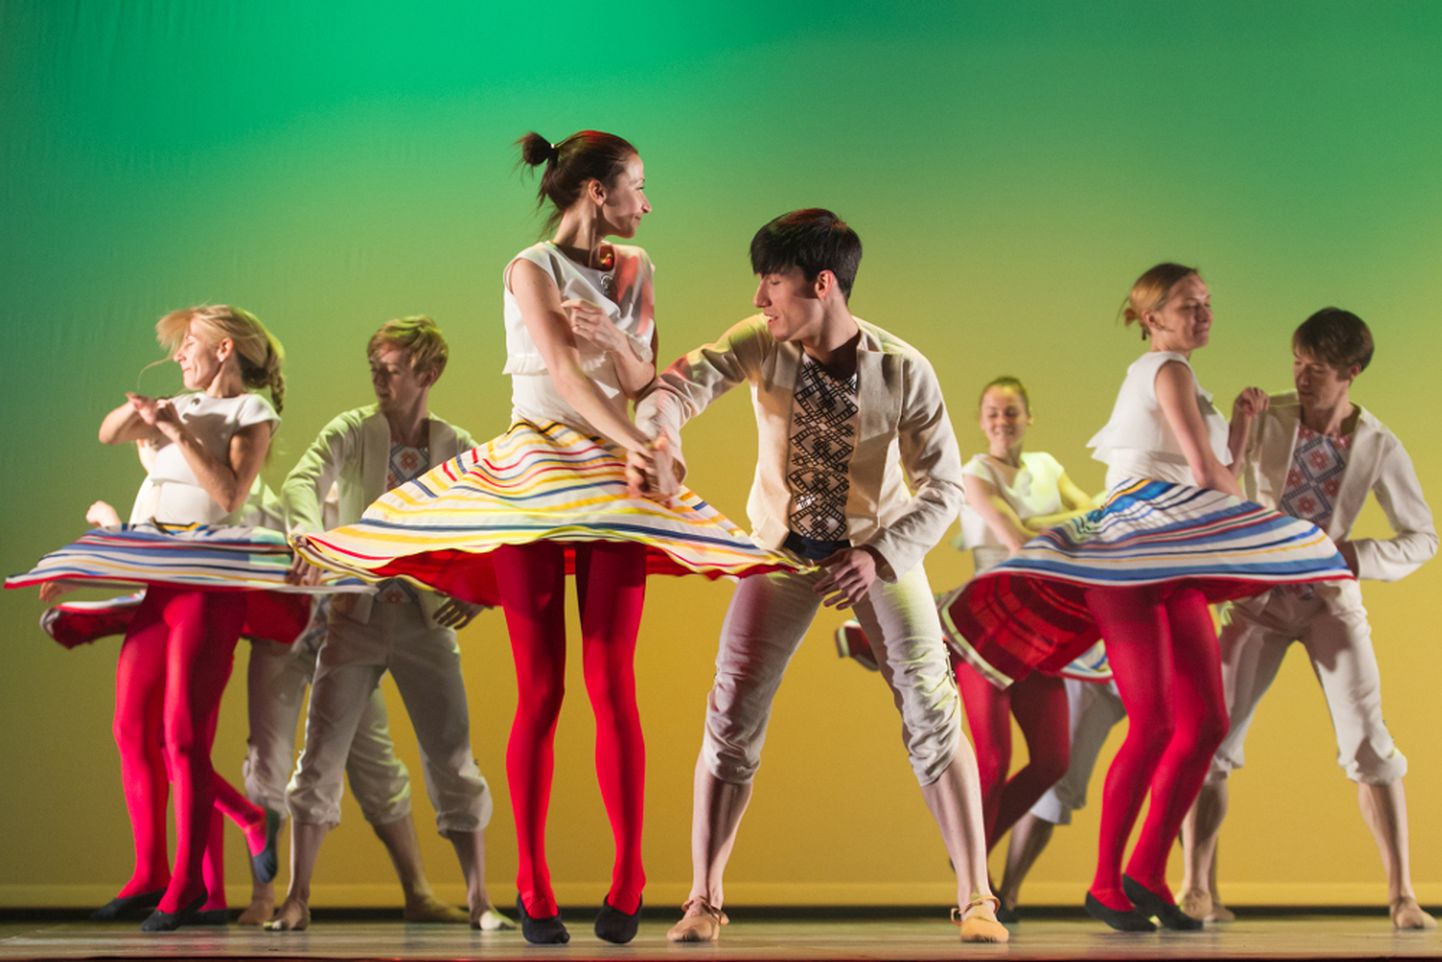 9. Jõhvi balletifestivalil 2015 sai muu seas näha tantsu Eduard Tubina balletist "Kratt", mida tänavu näeb tervikuna.
MATTI KÄMÄRÄ